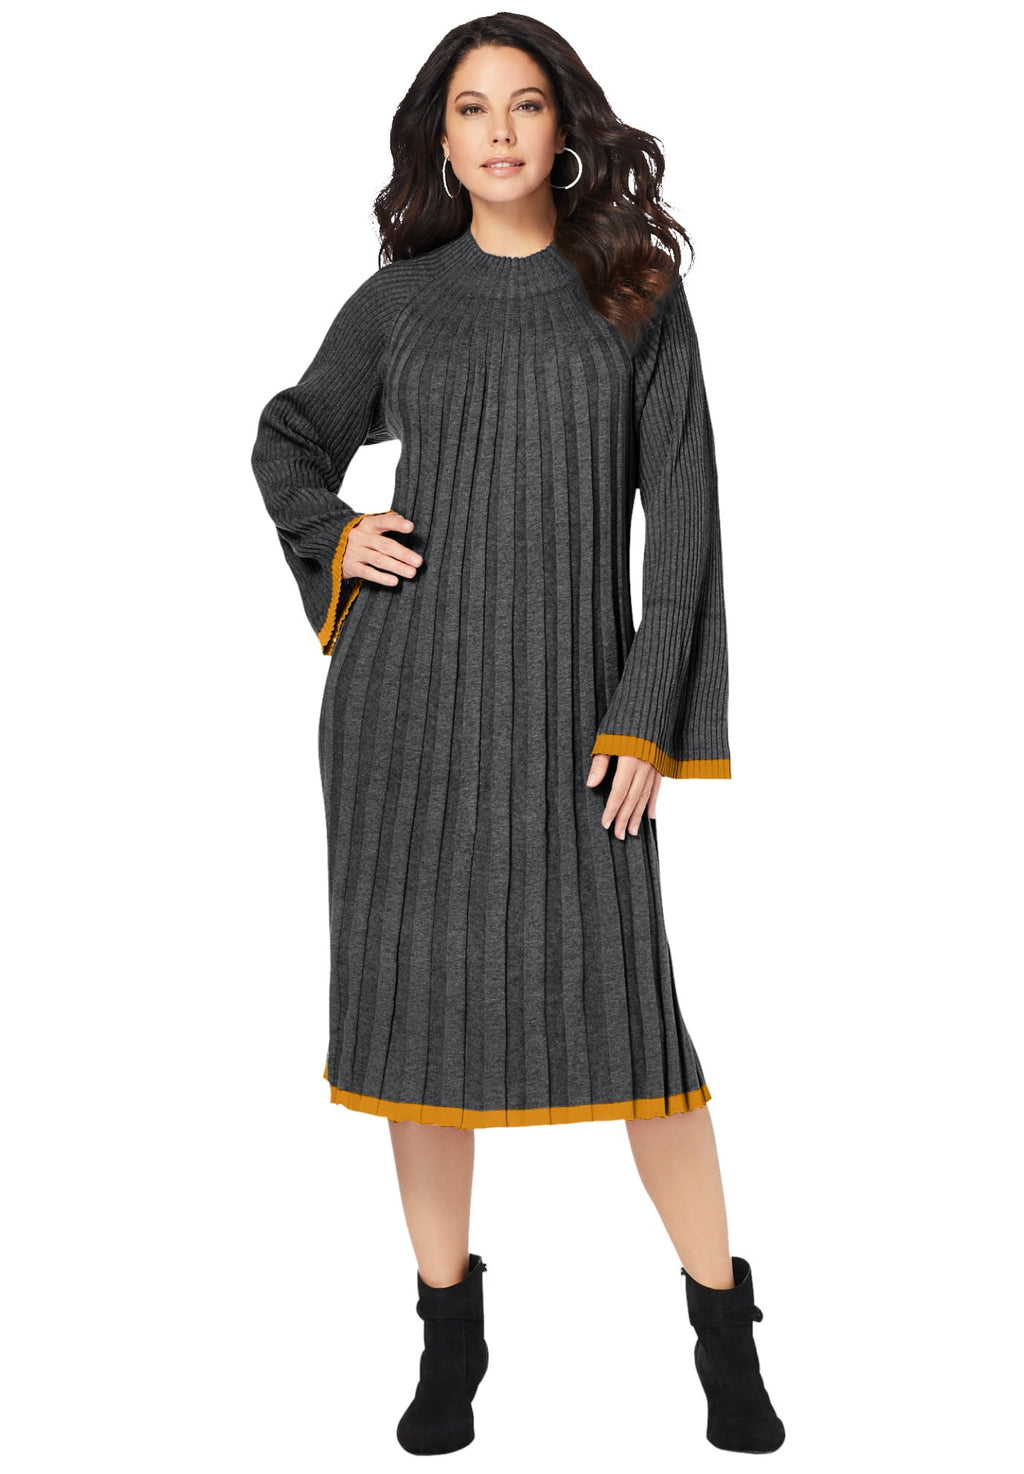 Roaman's Women's Plus Size Swing Sweater Dress Mock Turtleneck Wide Sleeves - image 1 of 5